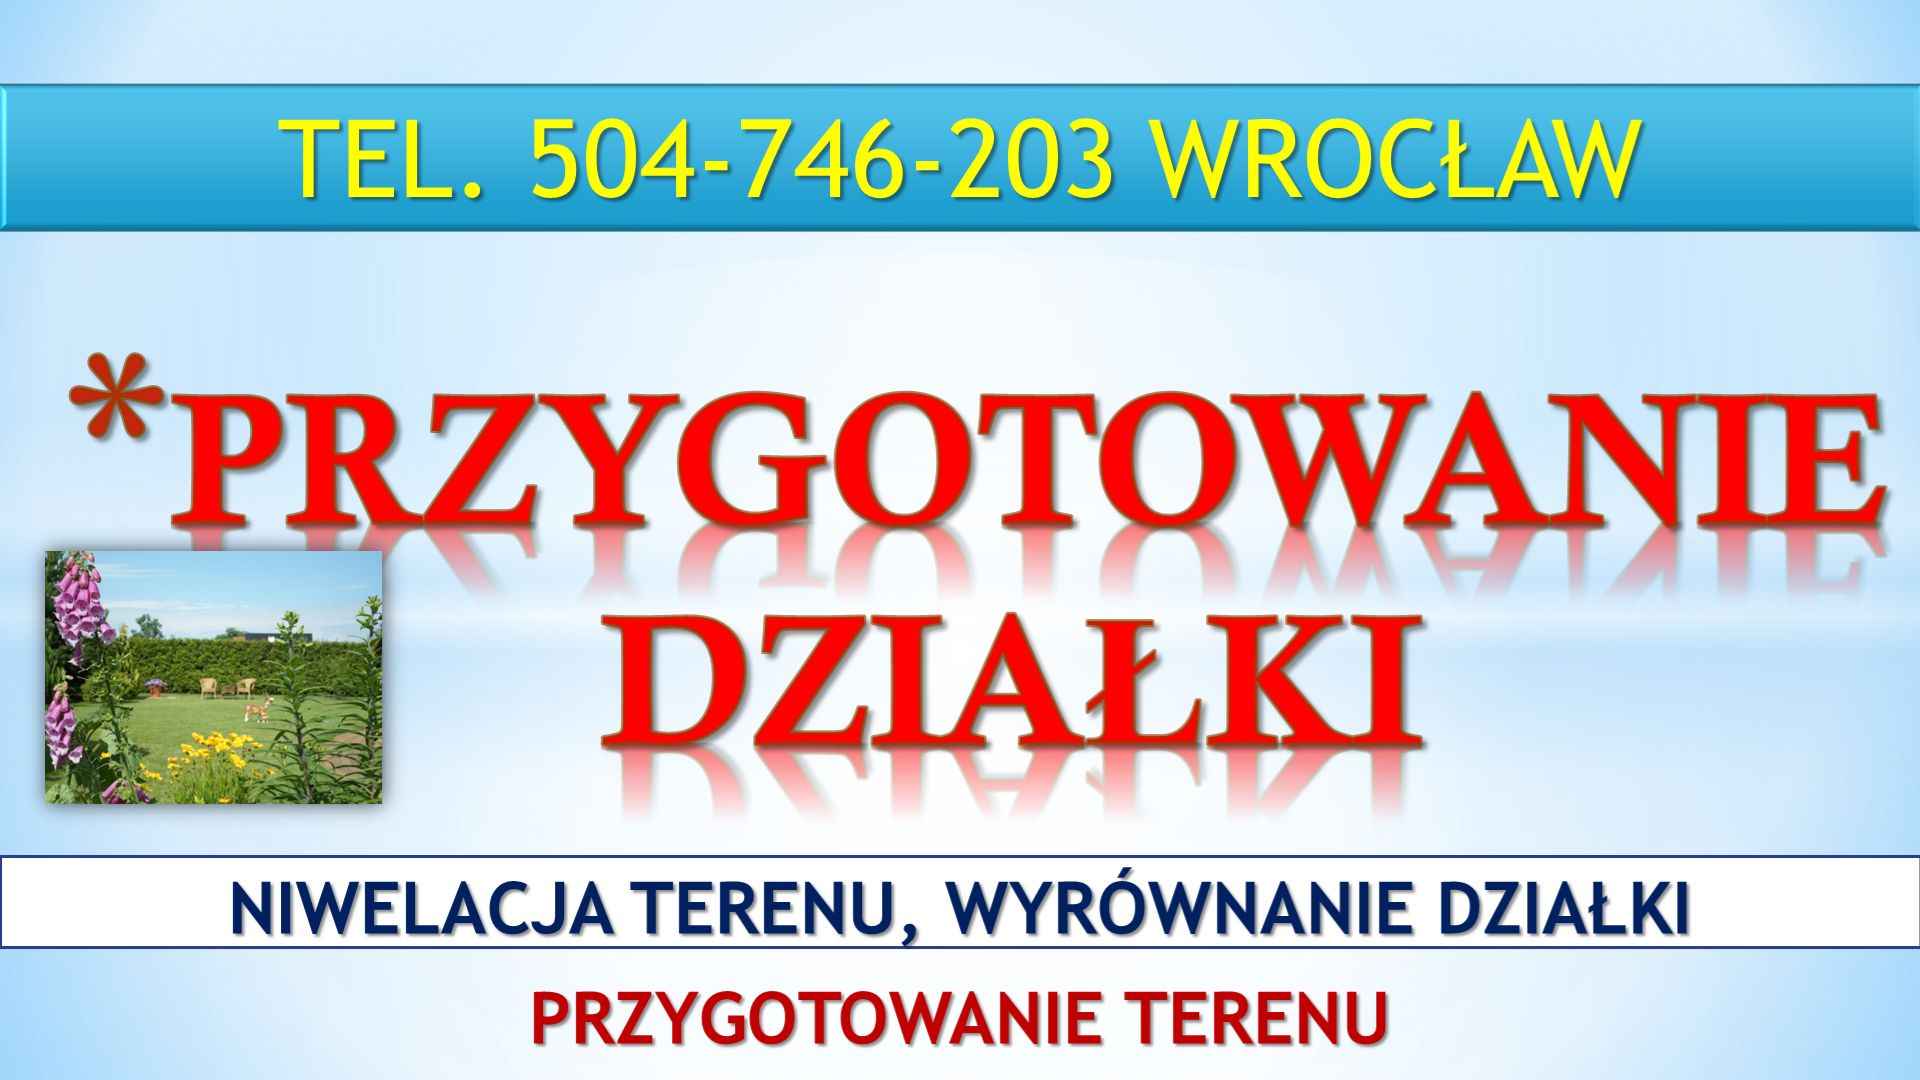 Niwelacja terenu działki, Wrocław, tel. 504-746-203. Wyrównanie terenu Psie Pole - zdjęcie 4